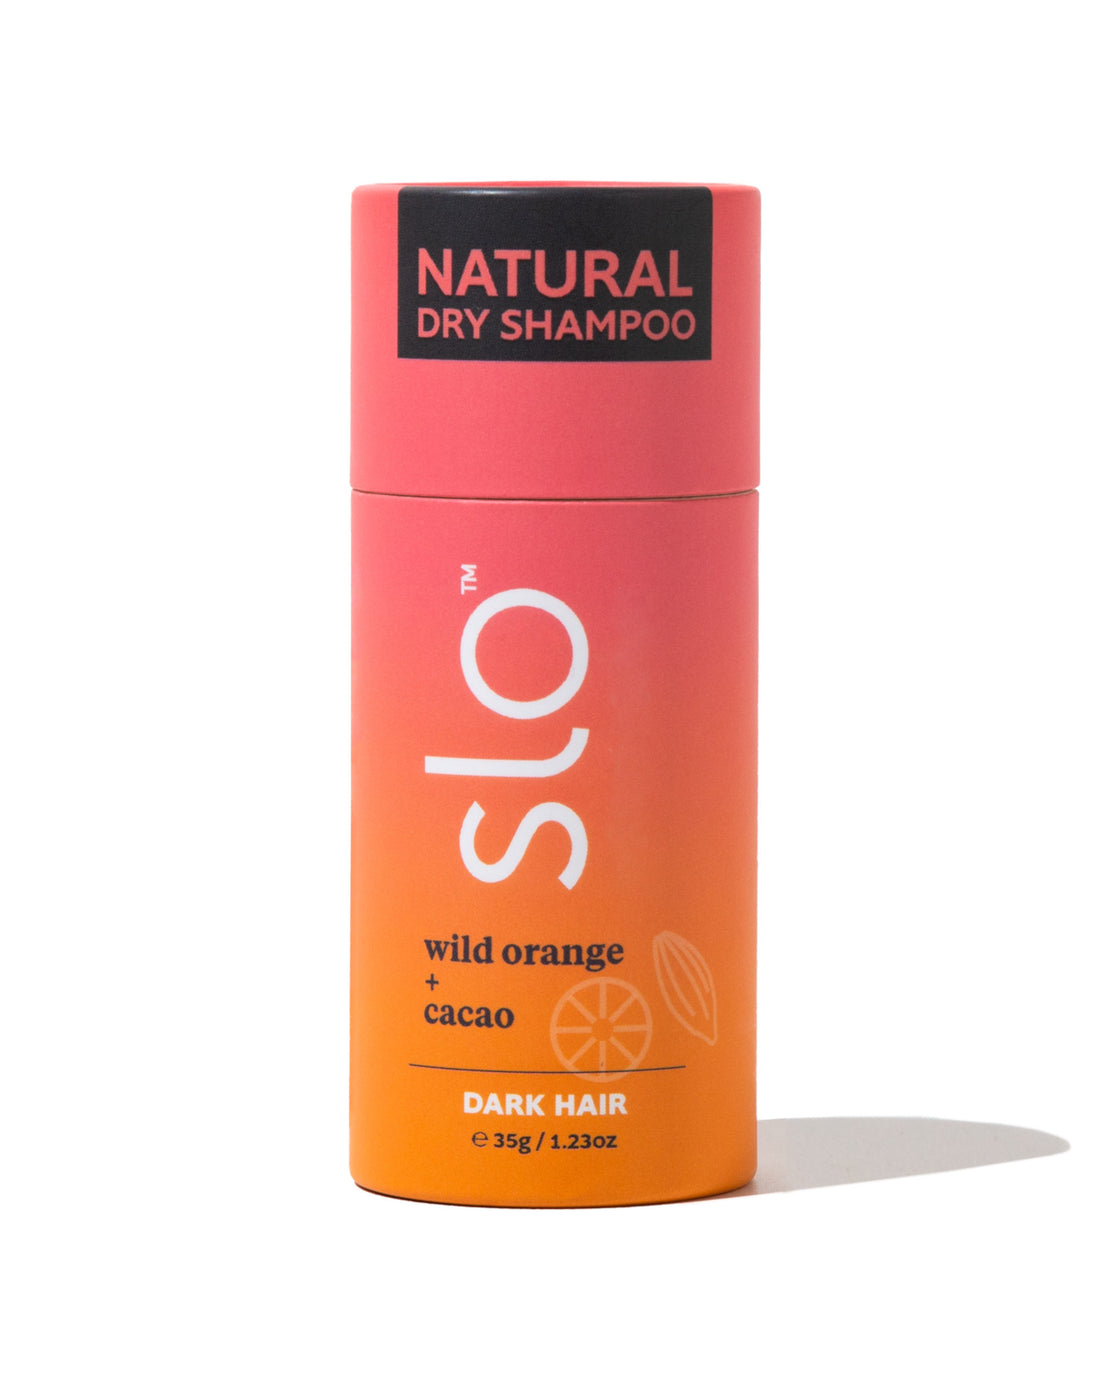 Natural Dry Shampoo - Dark Hair